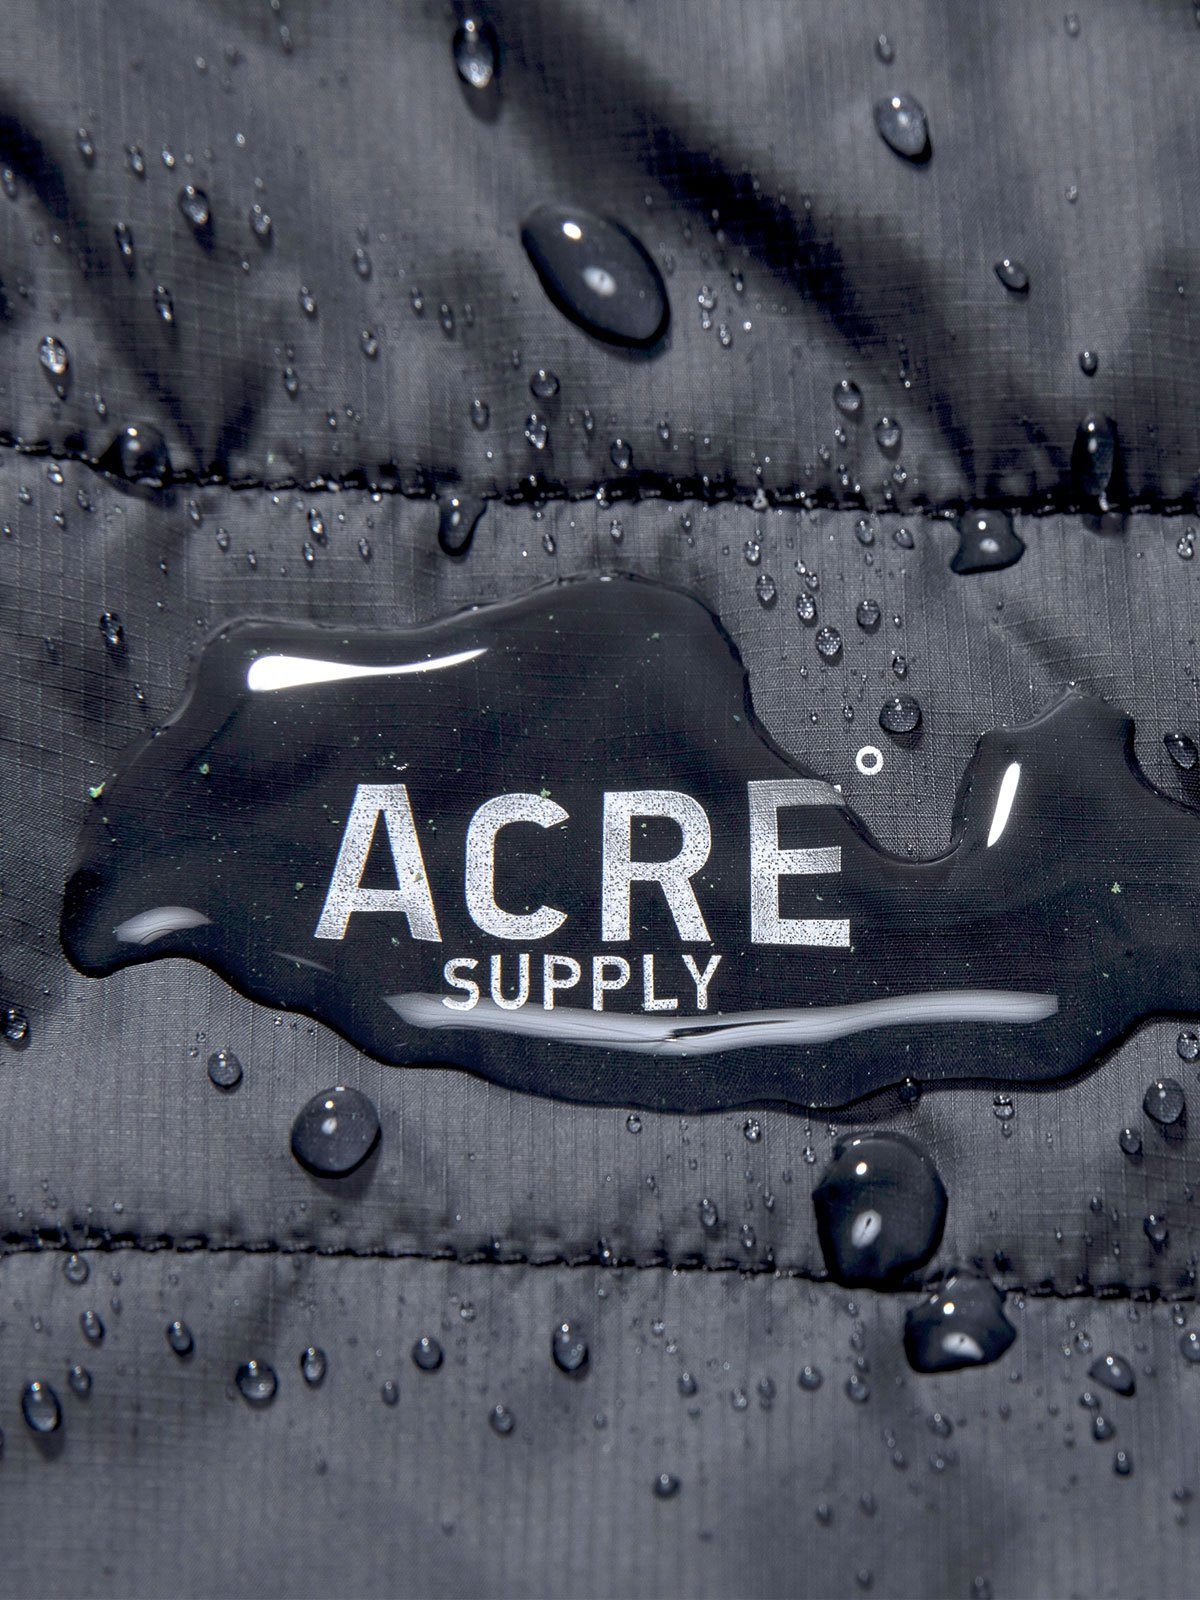 Acre Series Vest von Mission Workshop - Wetterfeste Taschen & Technische Bekleidung - San Francisco & Los Angeles - Für die Ewigkeit gebaut - Garantiert